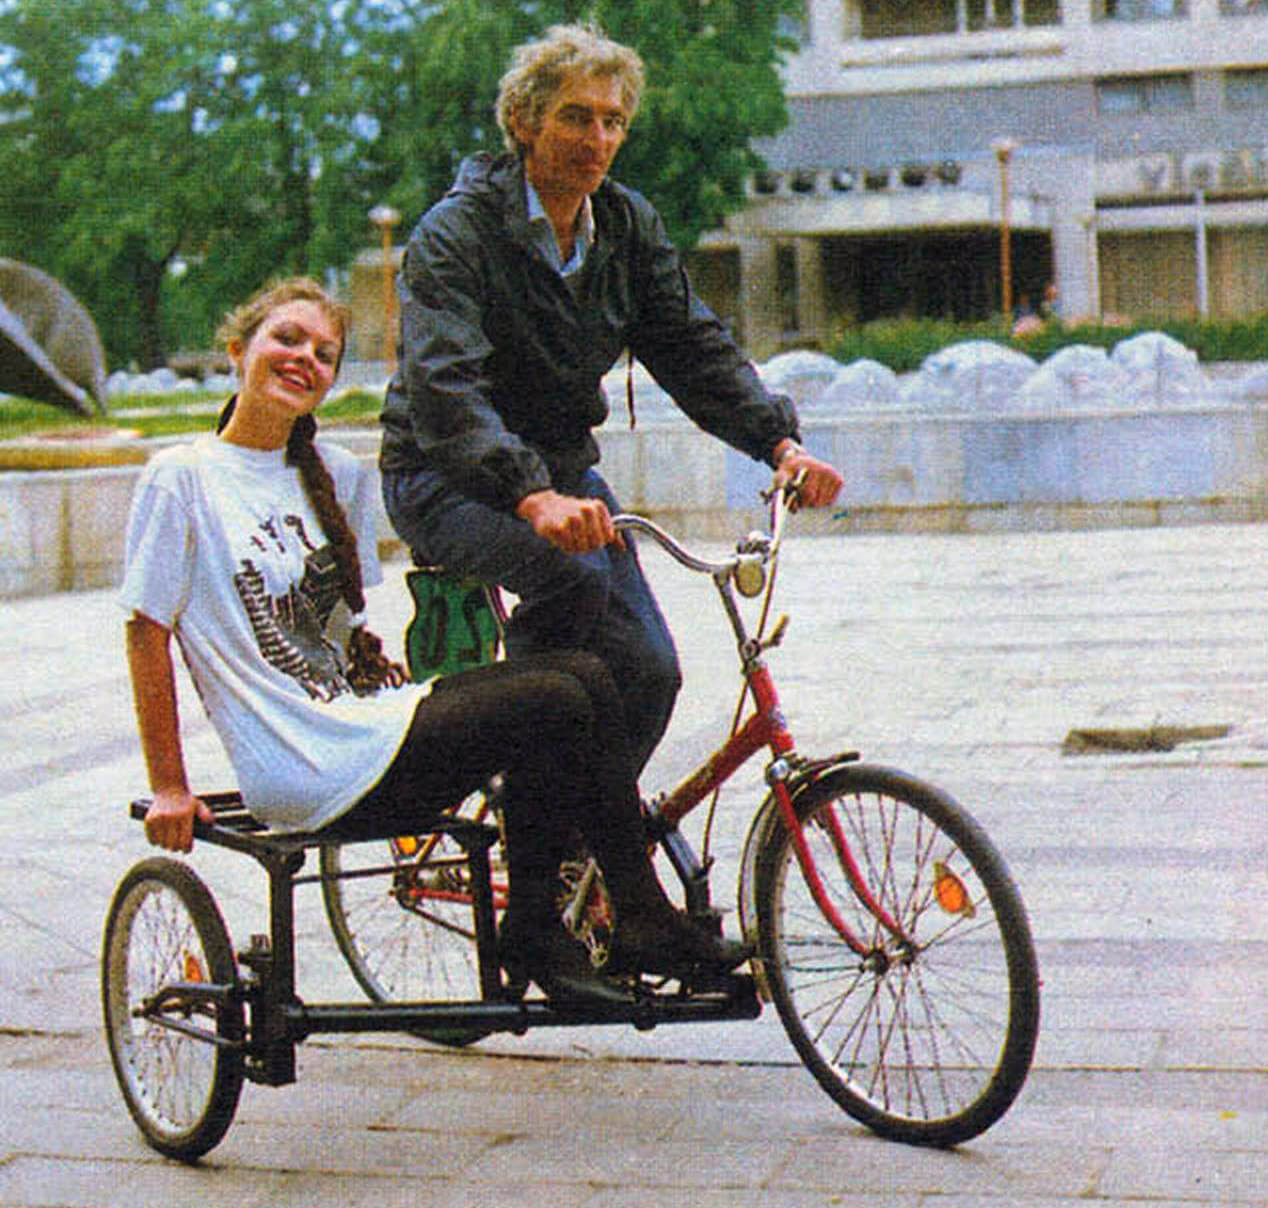 Обычный складной велосипед превращается в трехколесный веломобиль благодаря оригинальной «приставке», разработанной москвичом Игорем Грицаевым